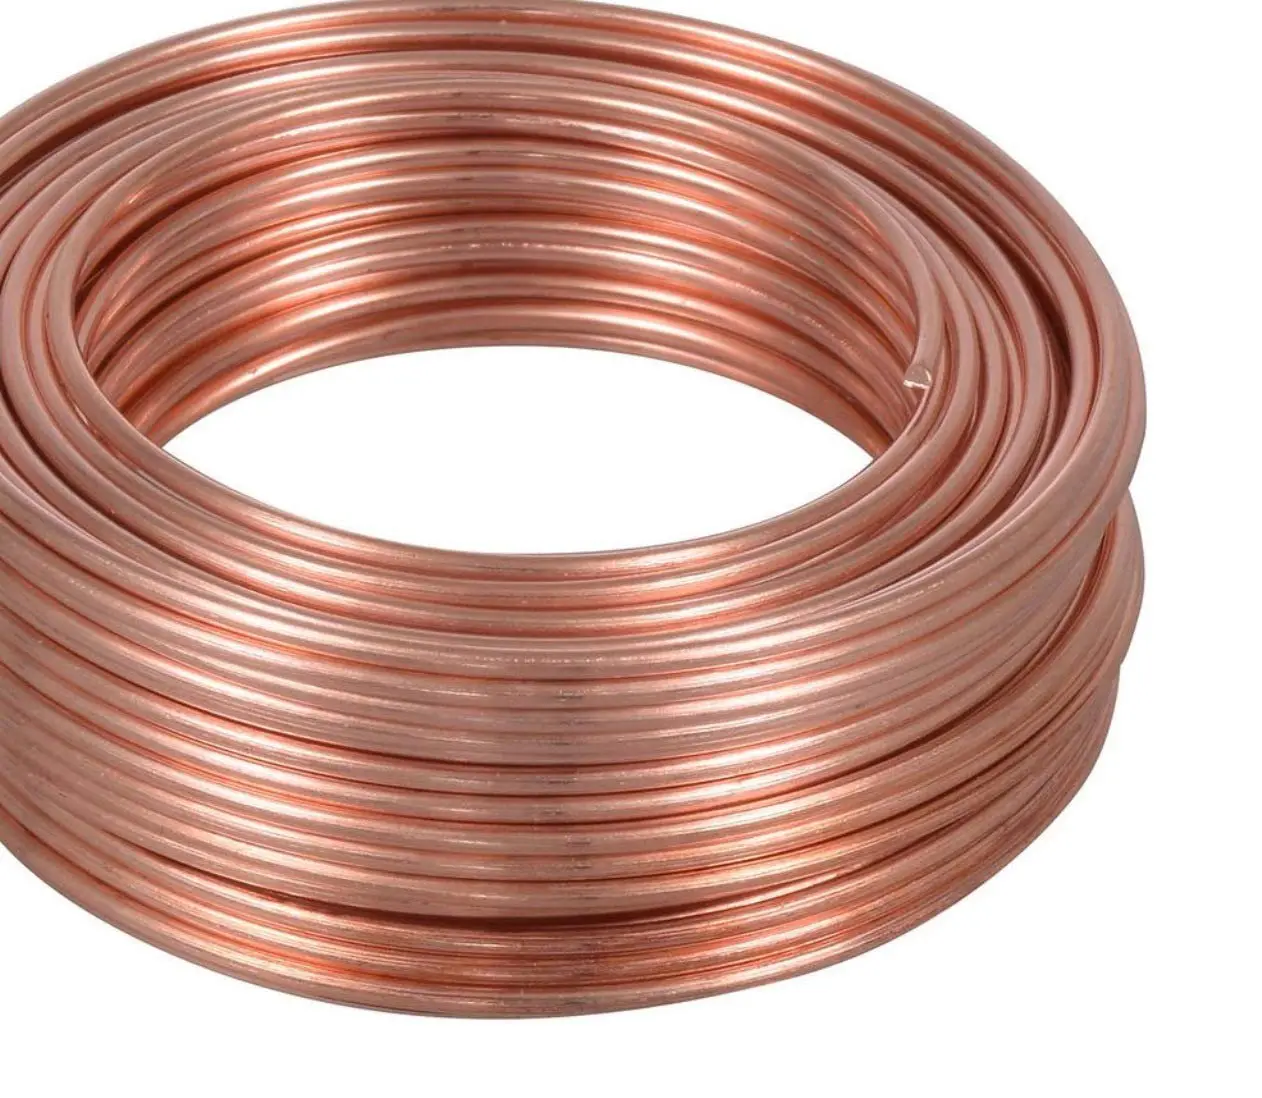 8 Ga. Solid Copper Round Wire